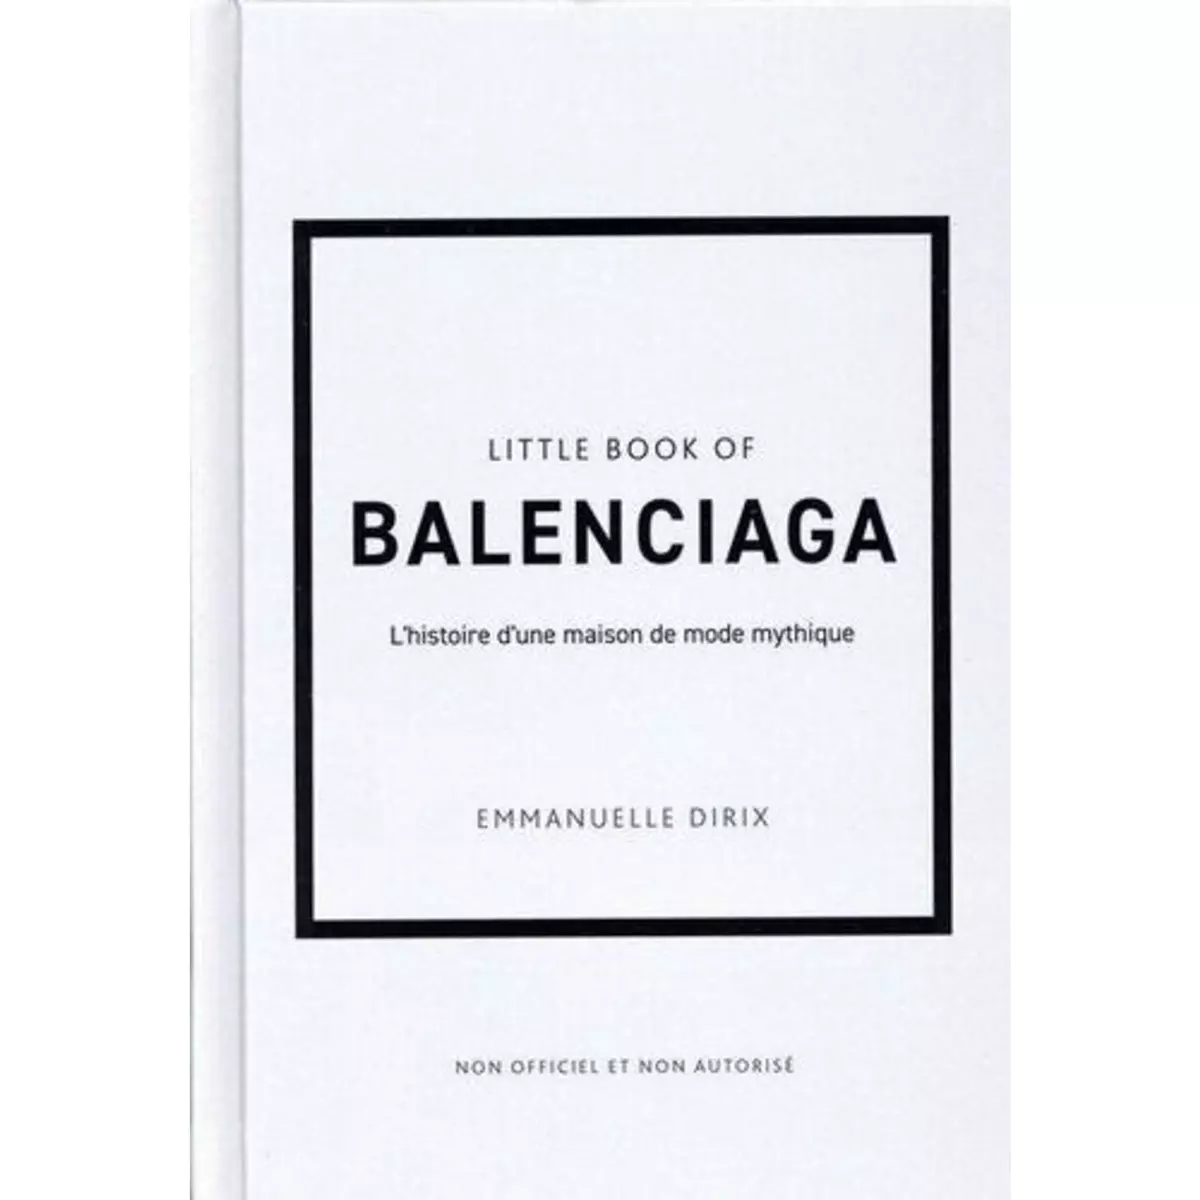  LITTLE BOOK OF BALENCIAGA. L'HISTOIRE D'UNE MAISON DE MODE MYTHIQUE, Dirix Emmanuelle